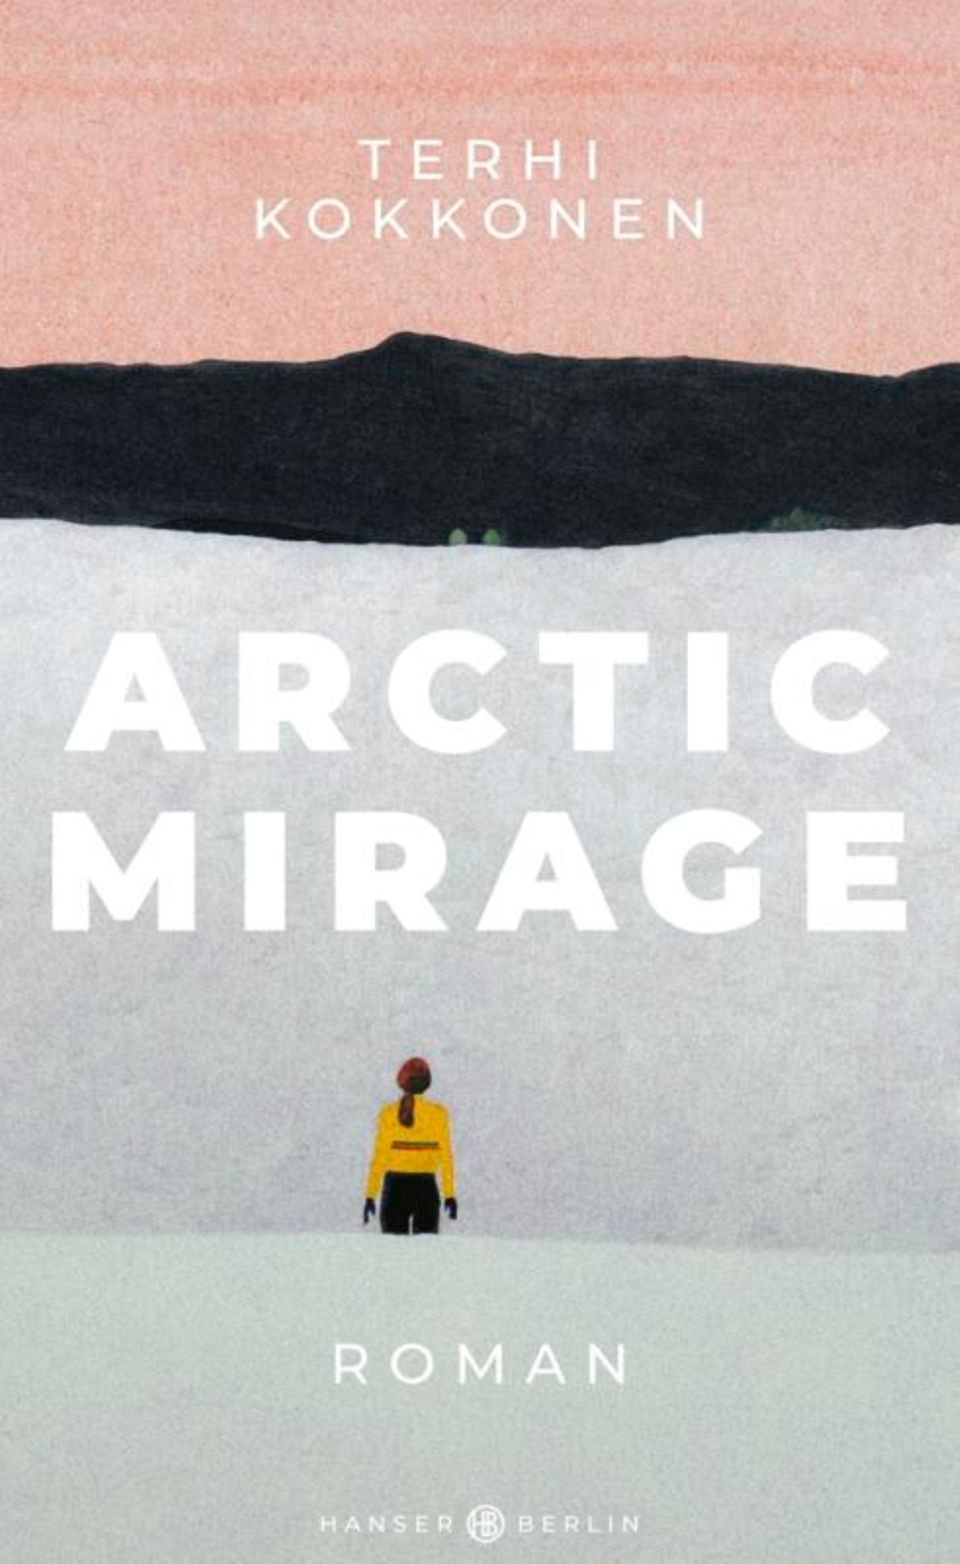 Buchtipps der Redaktion: Buchcover "Arctic Mirage"